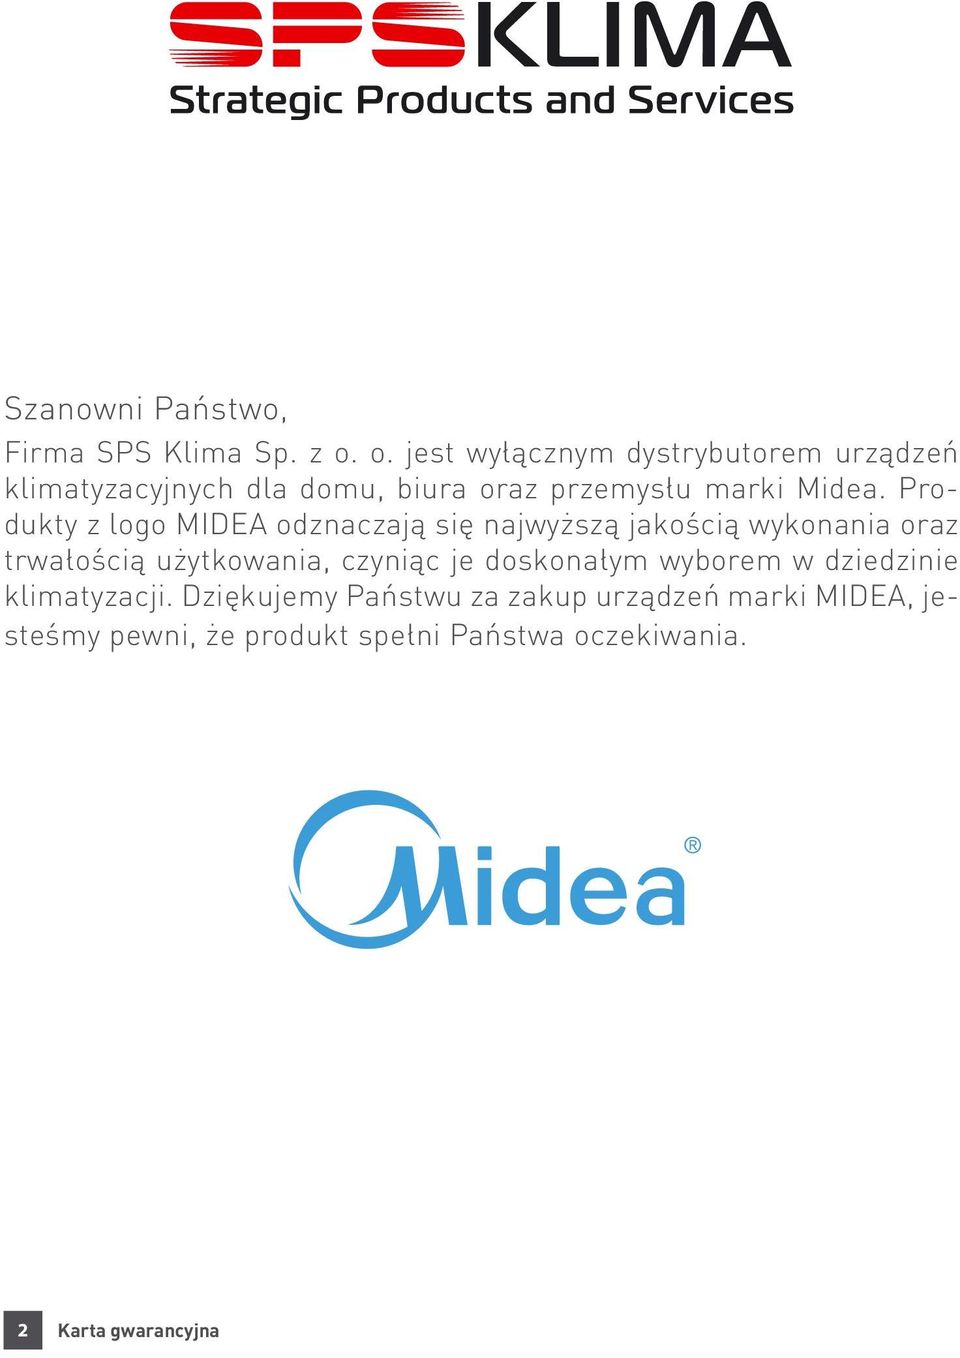 Produkty z logo MIDEA odznaczają się najwyższą jakością wykonania oraz trwałością użytkowania, czyniąc je